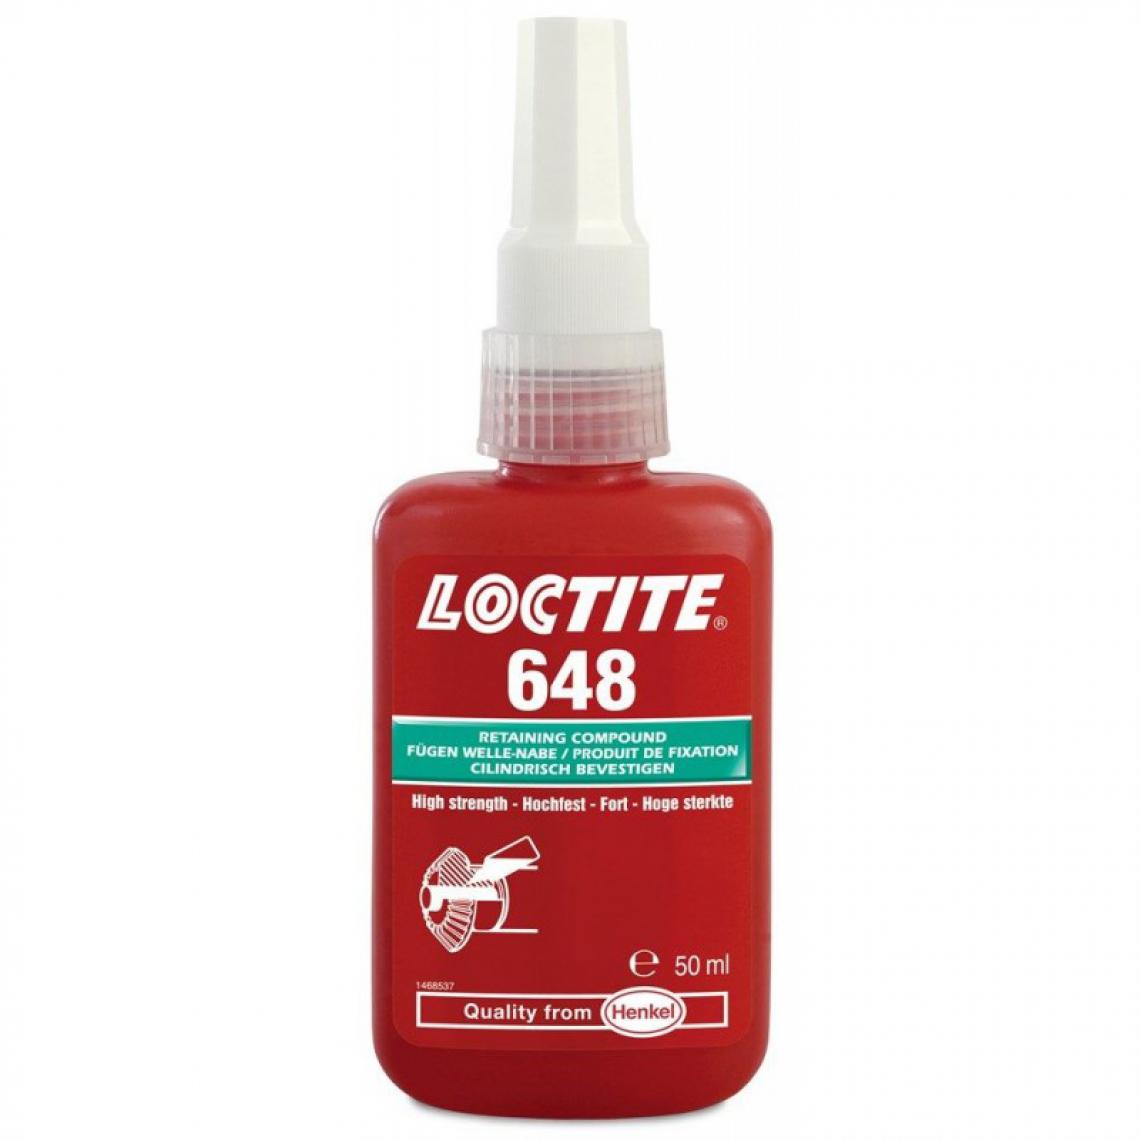 Loctite - Fixation de scellement de douille et de palier Loctite 648 5ml - Colle & adhésif